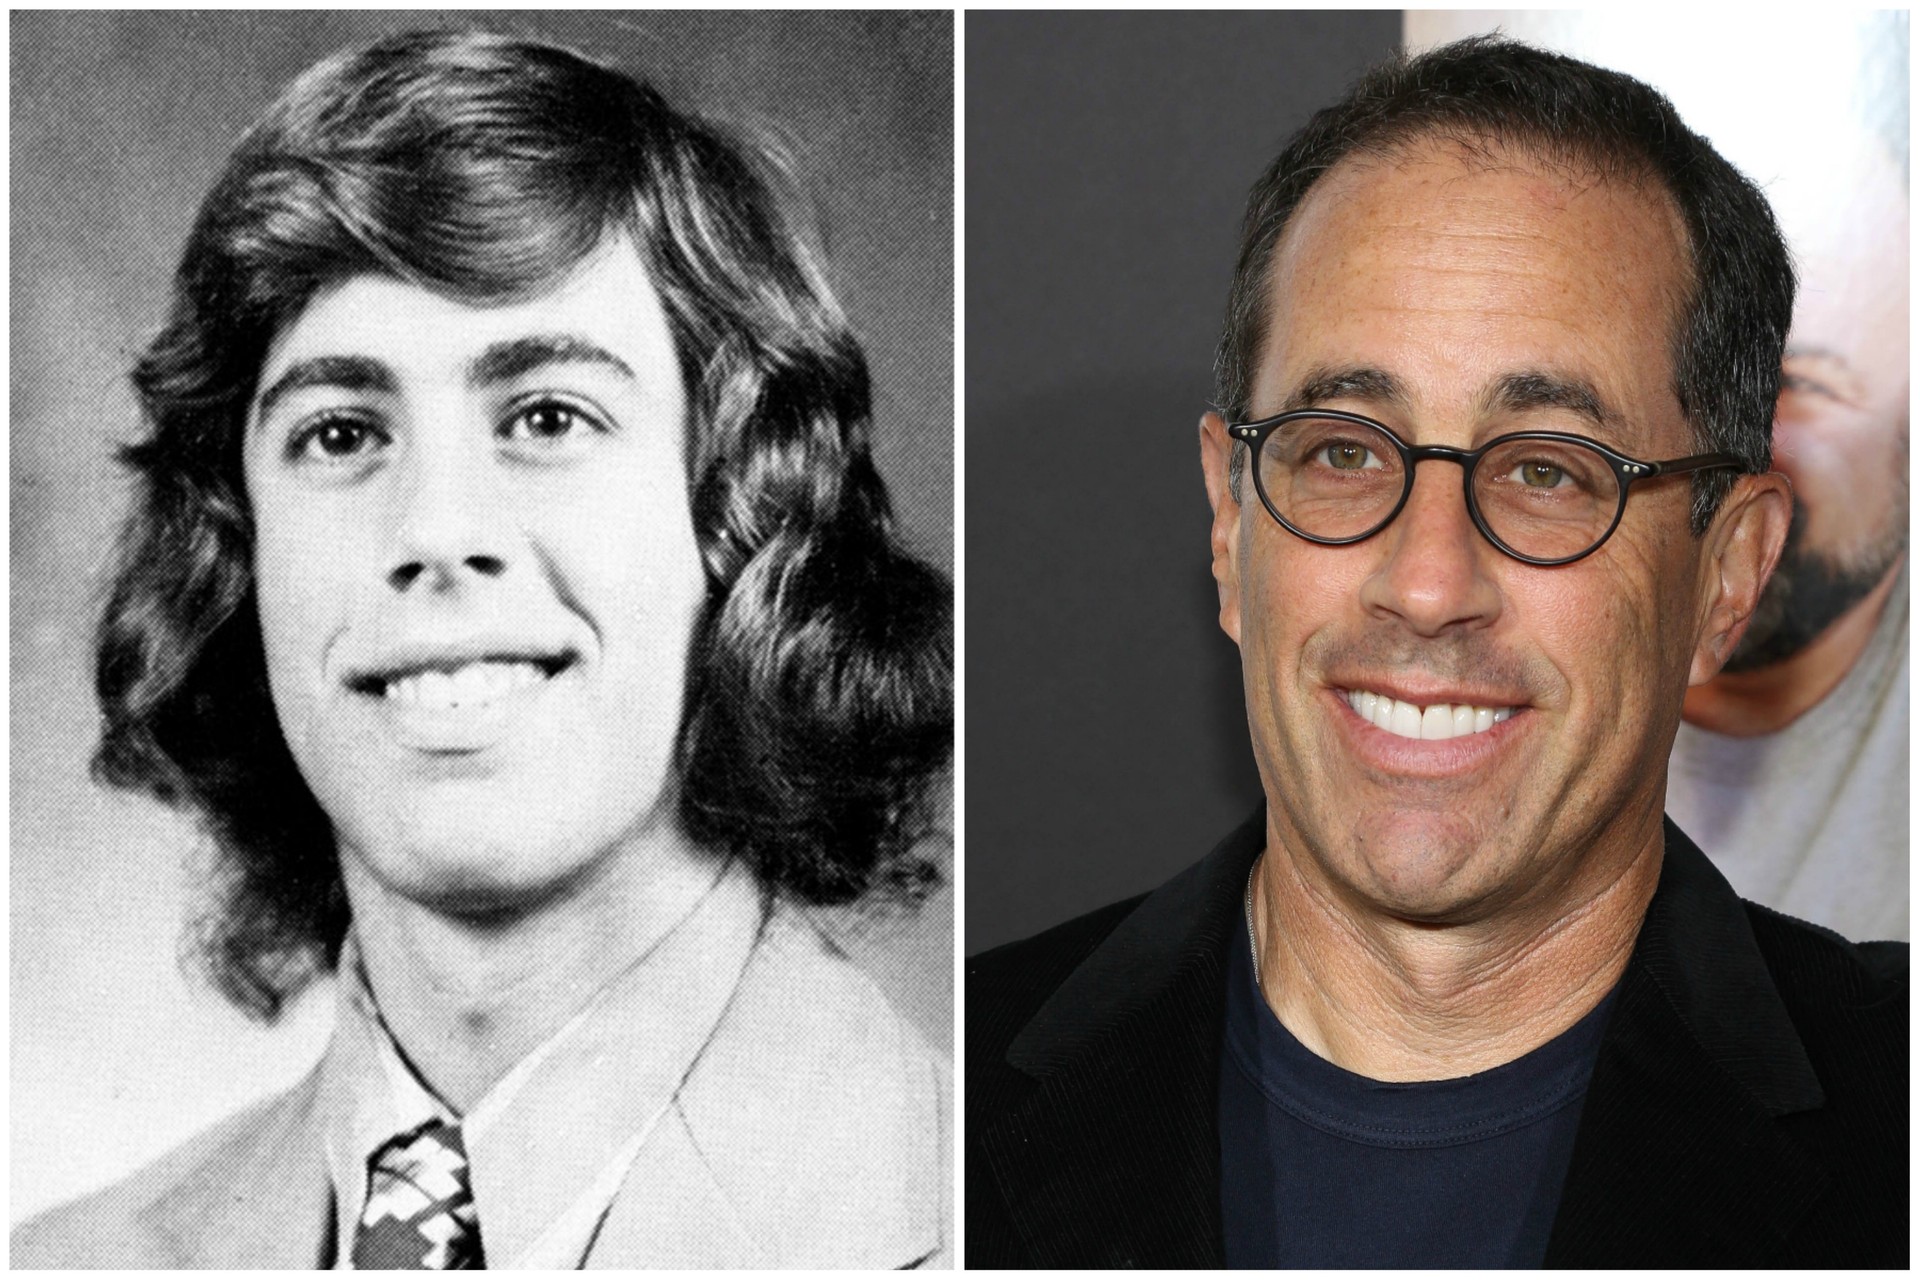 O ator e humorista Jerry Seinfeld completou 60 anos em 2014. (Foto: Getty Images)